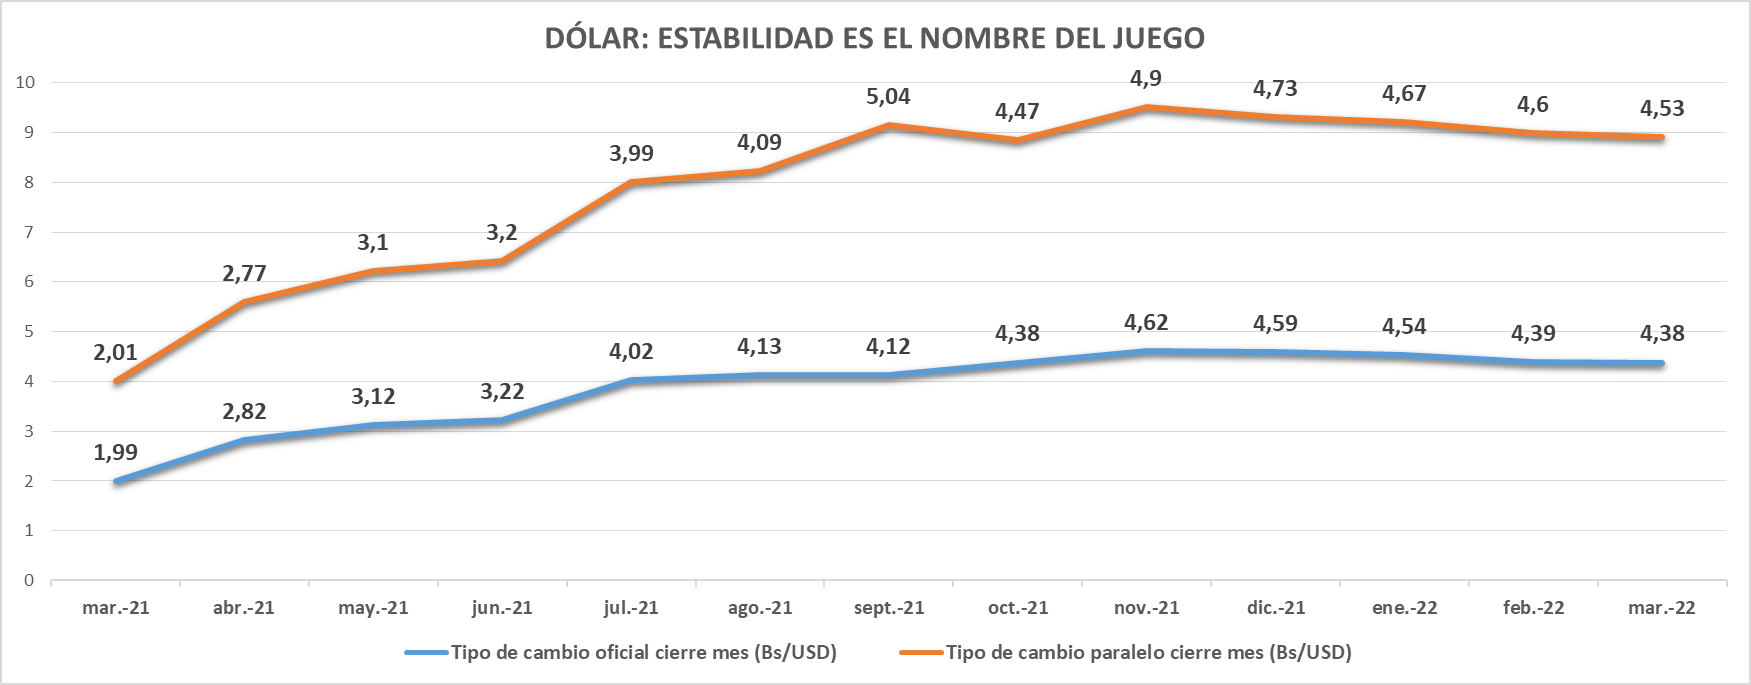 BCV presionó baja contundente del dólar en el primer trimestre pero la liquidez comienza a repuntar (+ datos)